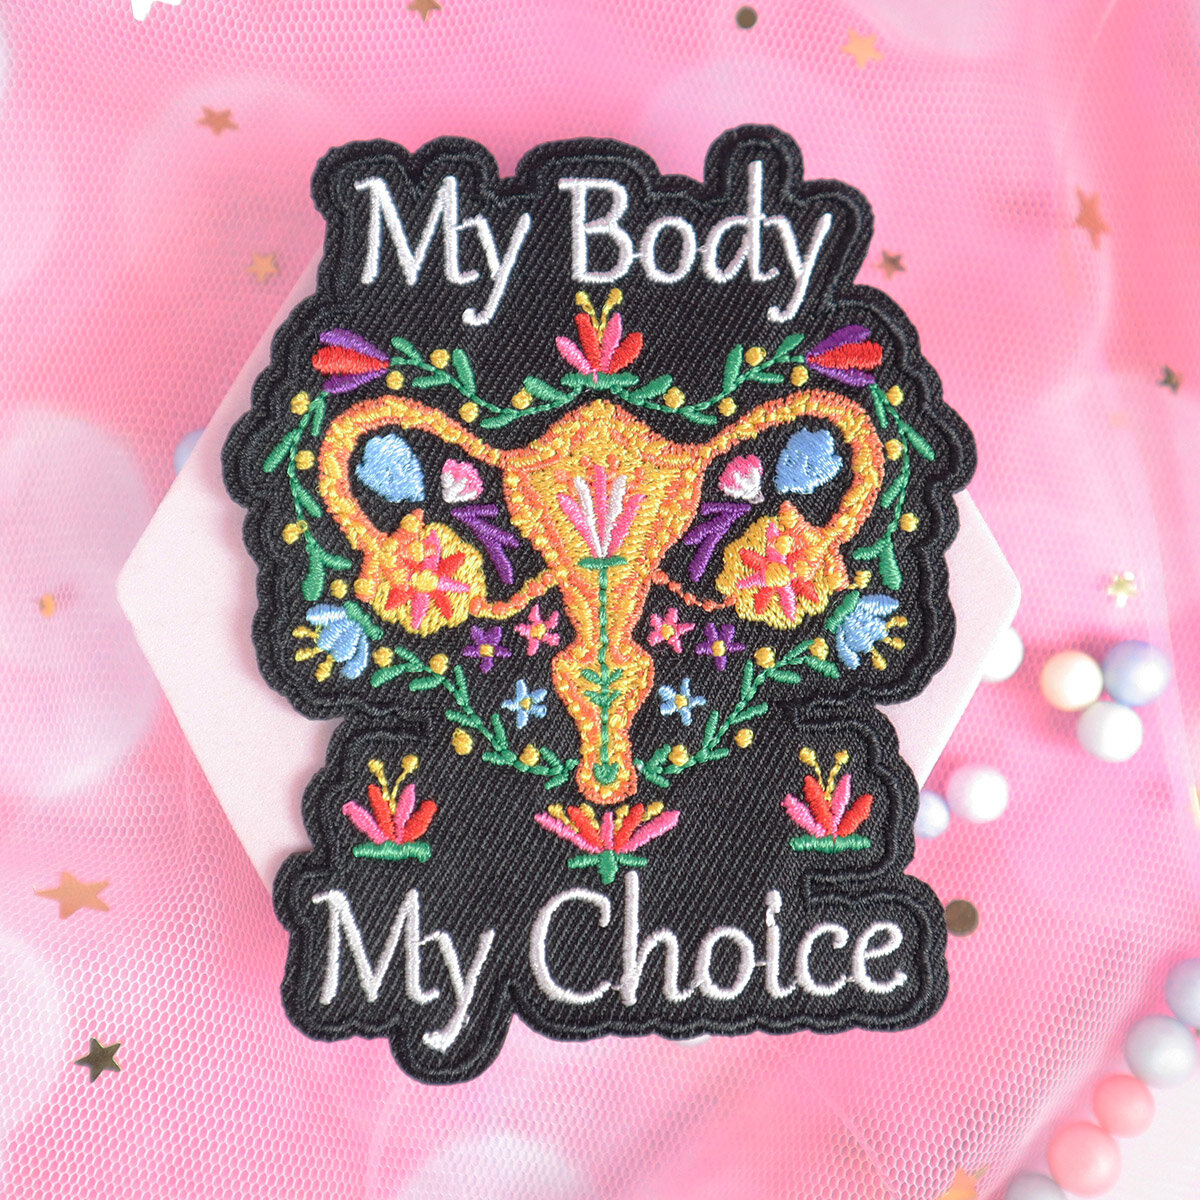 TygmÃ¤rke - My Body, My Choice